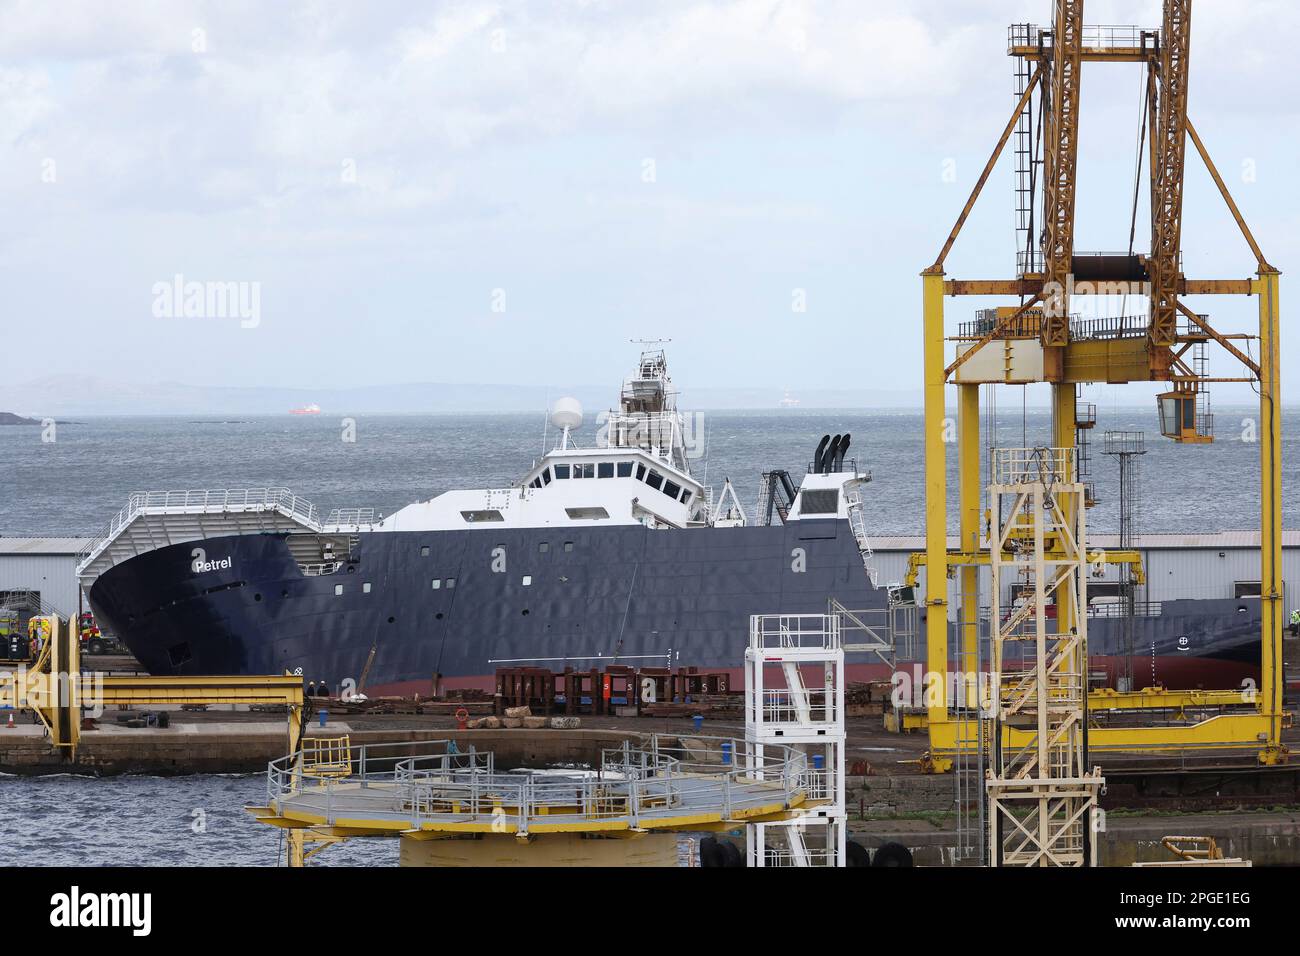 Blick auf das Forschungsschiff Petrel, nachdem es in einem Trockendock in Leith, nahe Edinburgh, Schottland, Großbritannien, umkippte, März 22, 2023. REUTERS/Russell Cheyne Stockfoto